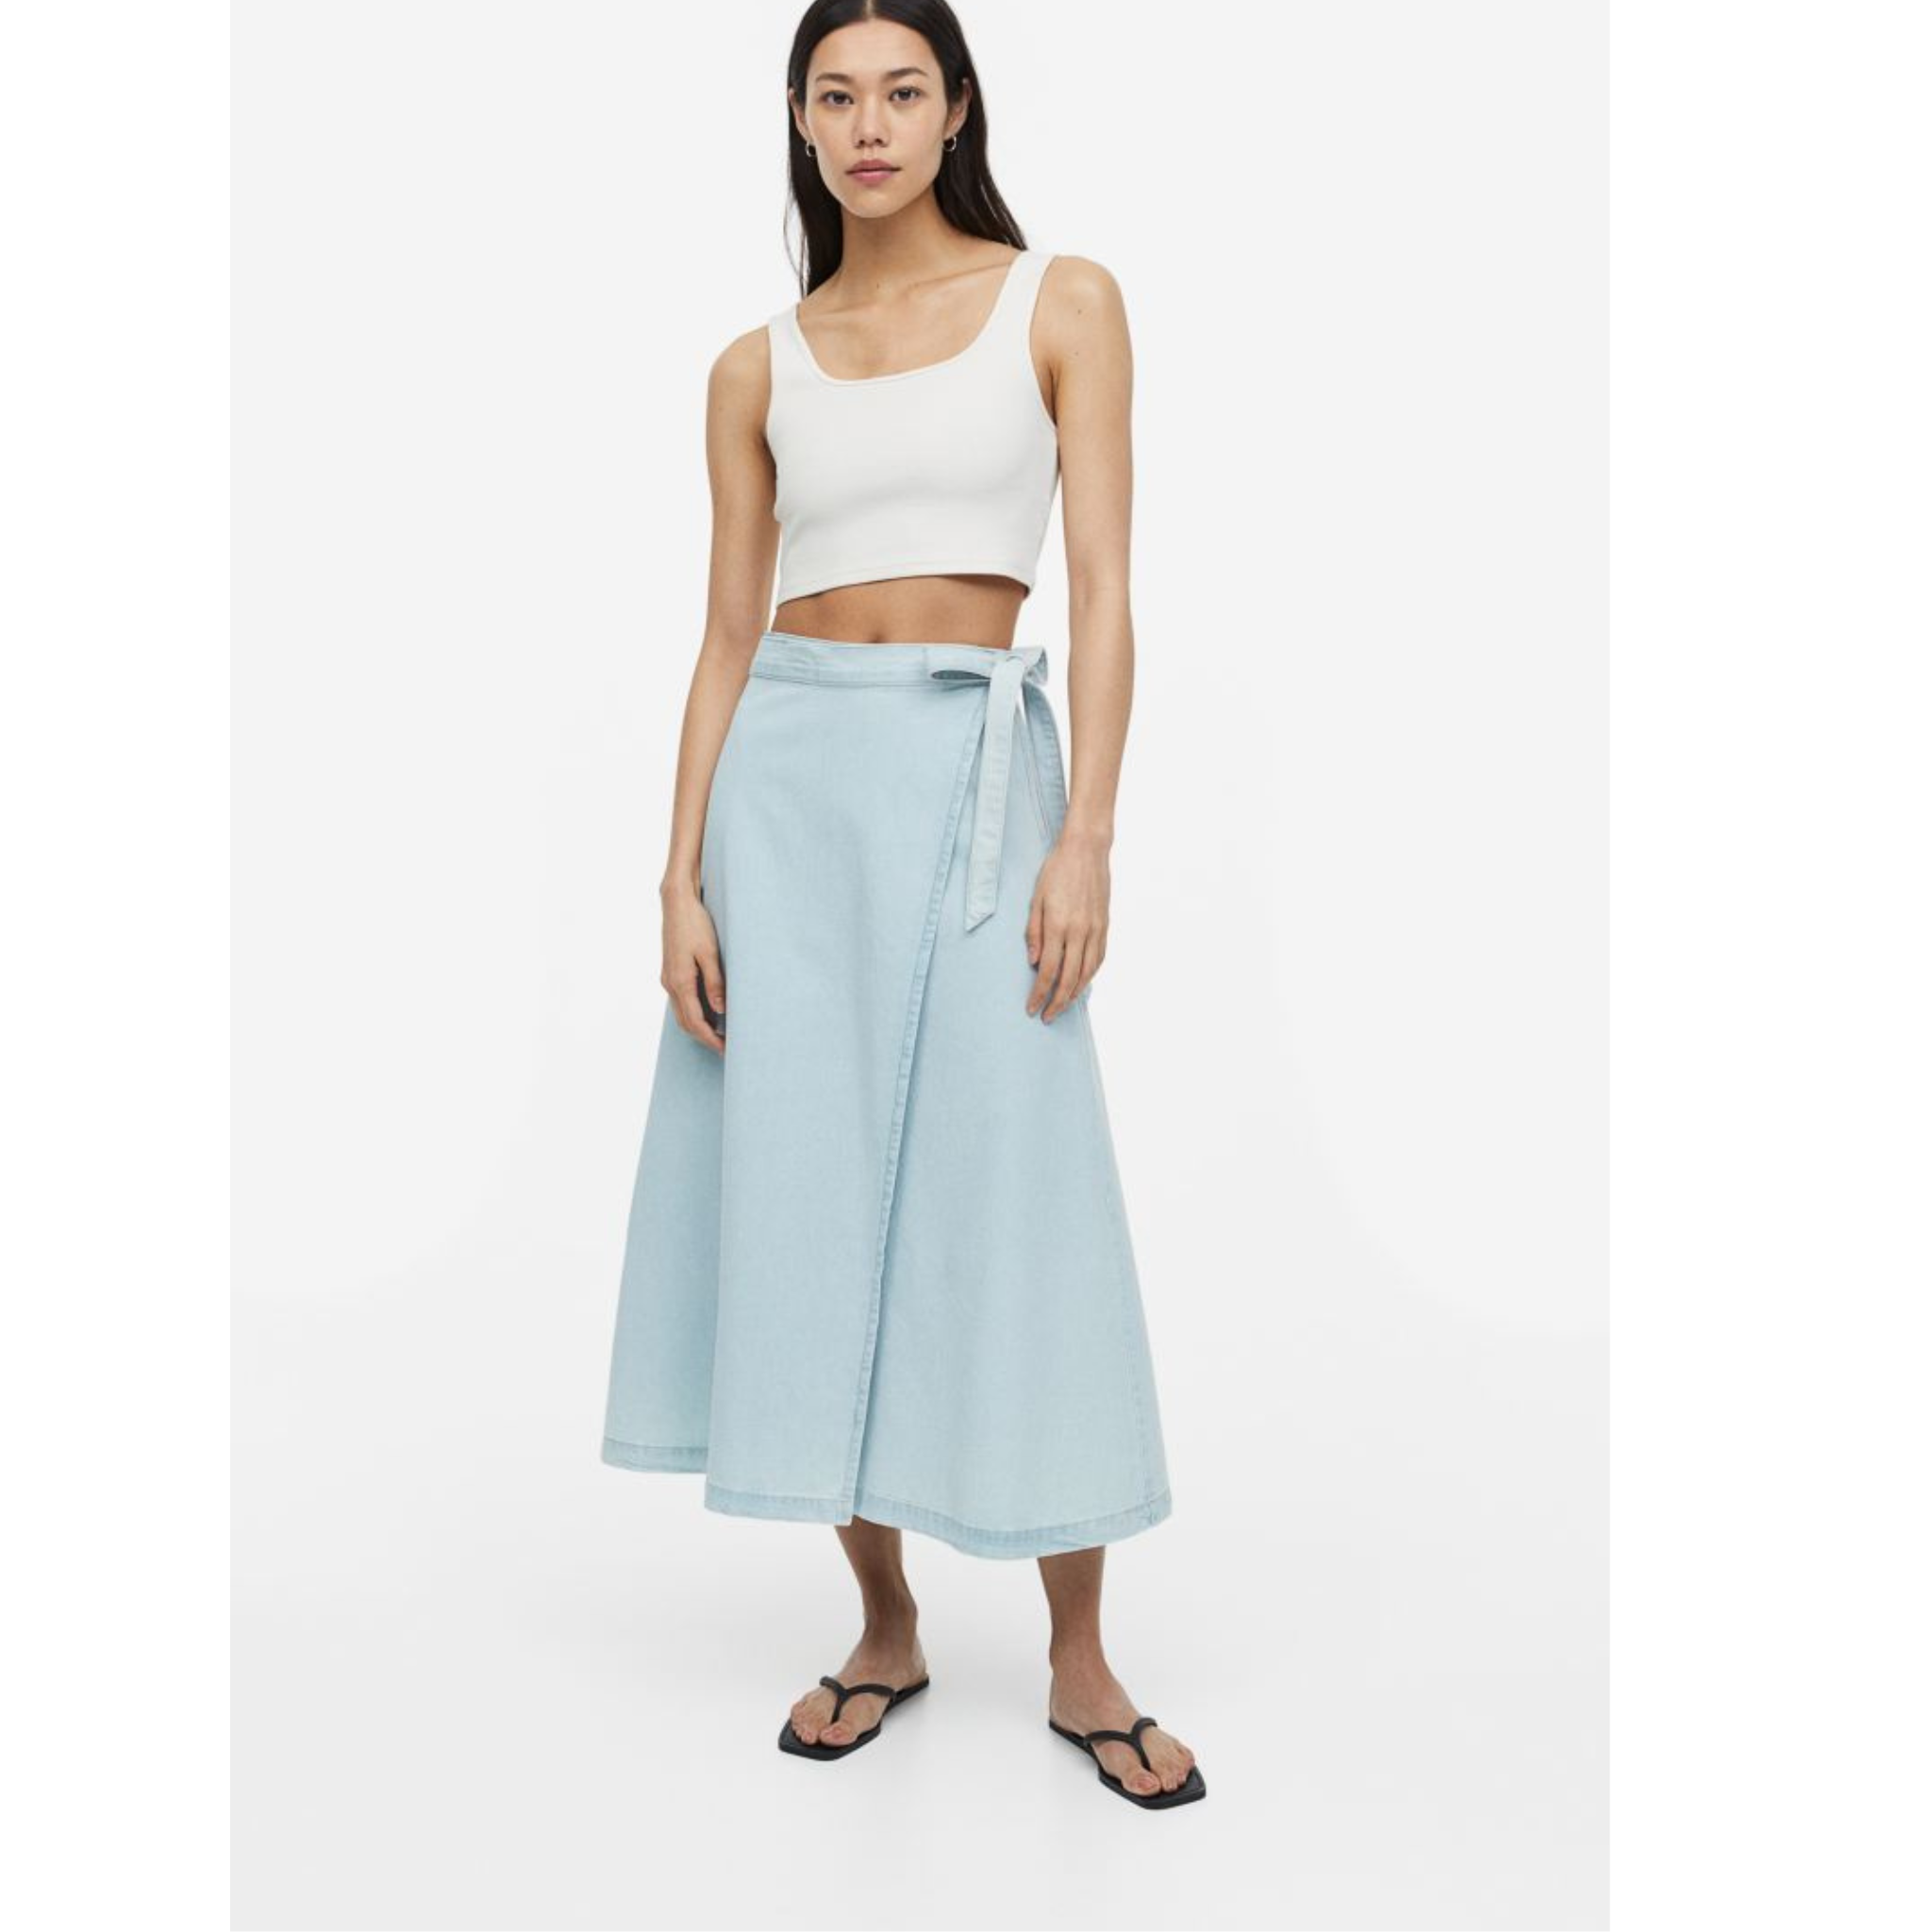 H&M Denim Wrap Skirt (2 COLORS)